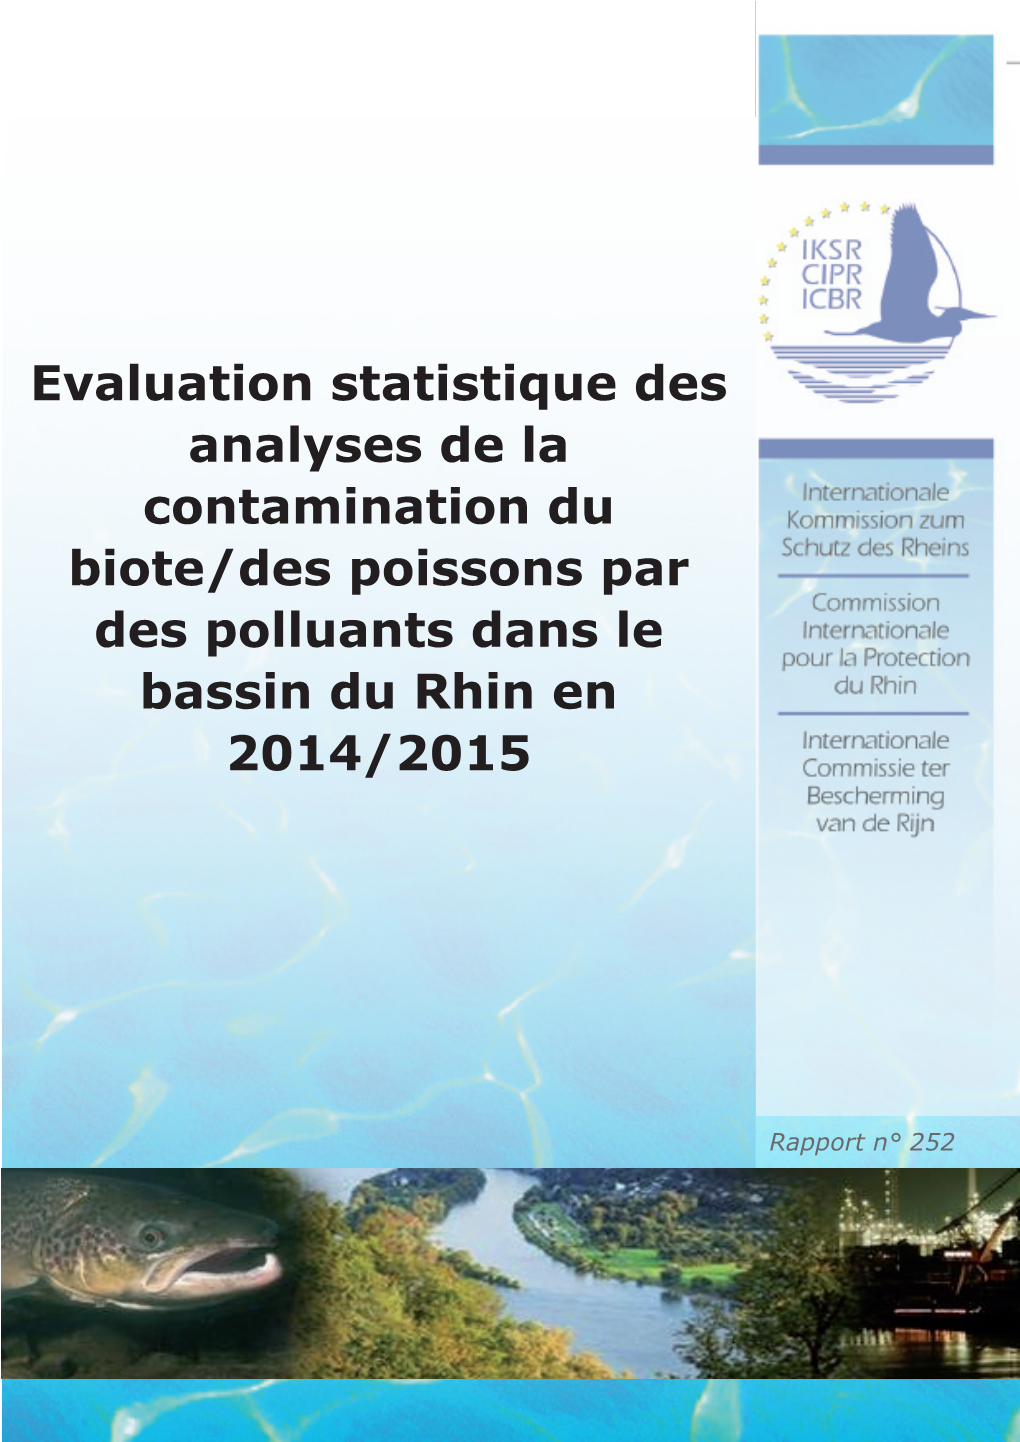 Evaluation Statistique Des Analyses De La Contamination Du Biote/Des Poissons Par Des Polluants Dans Le Bassin Du Rhin En 2014/2015